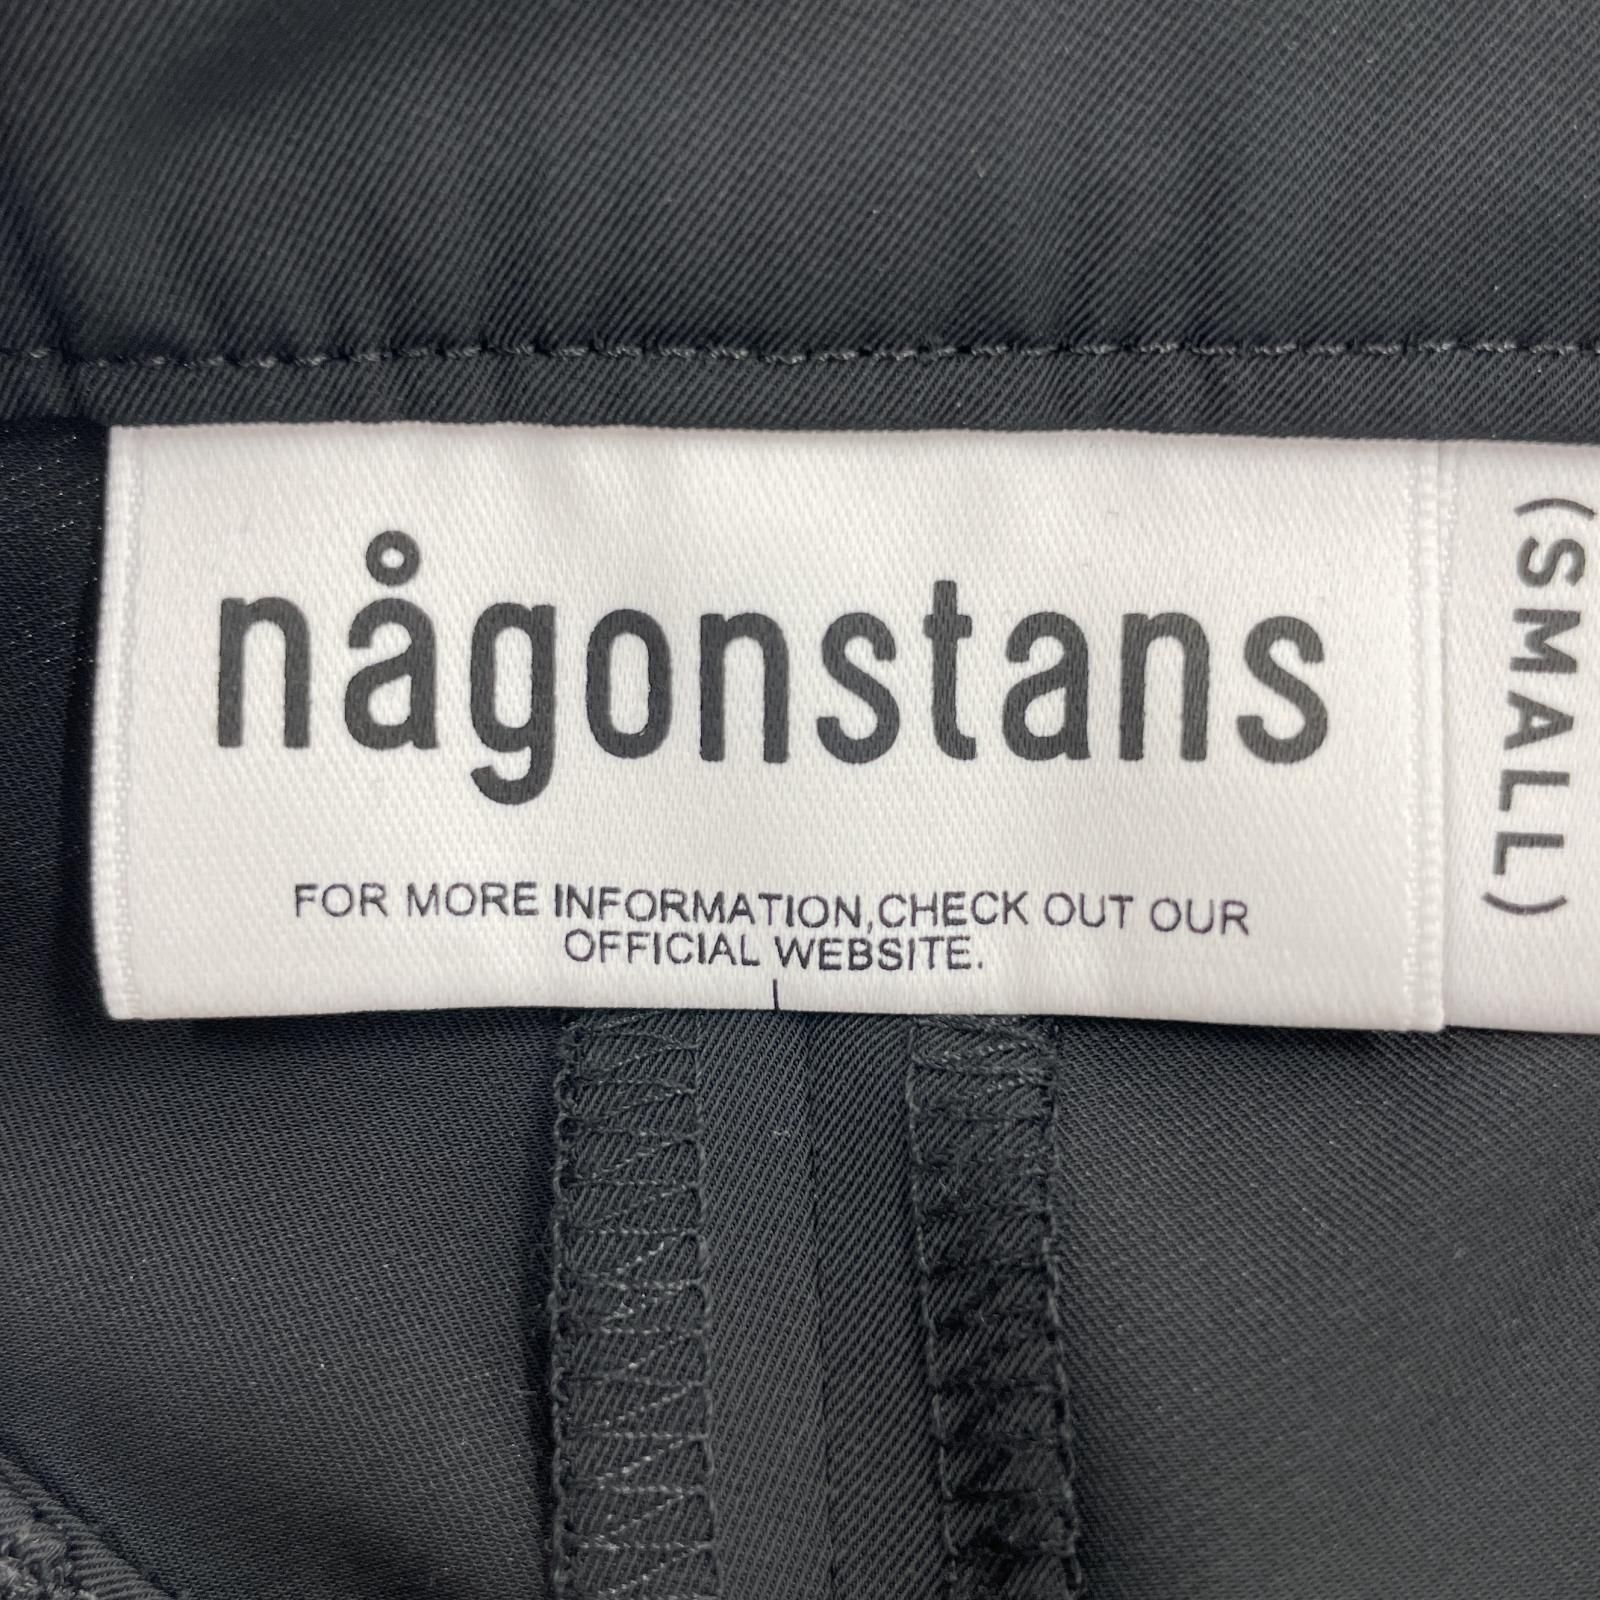 nagonstans/ポリワイドカーゴパンツ/S/ブラック - メルカリ